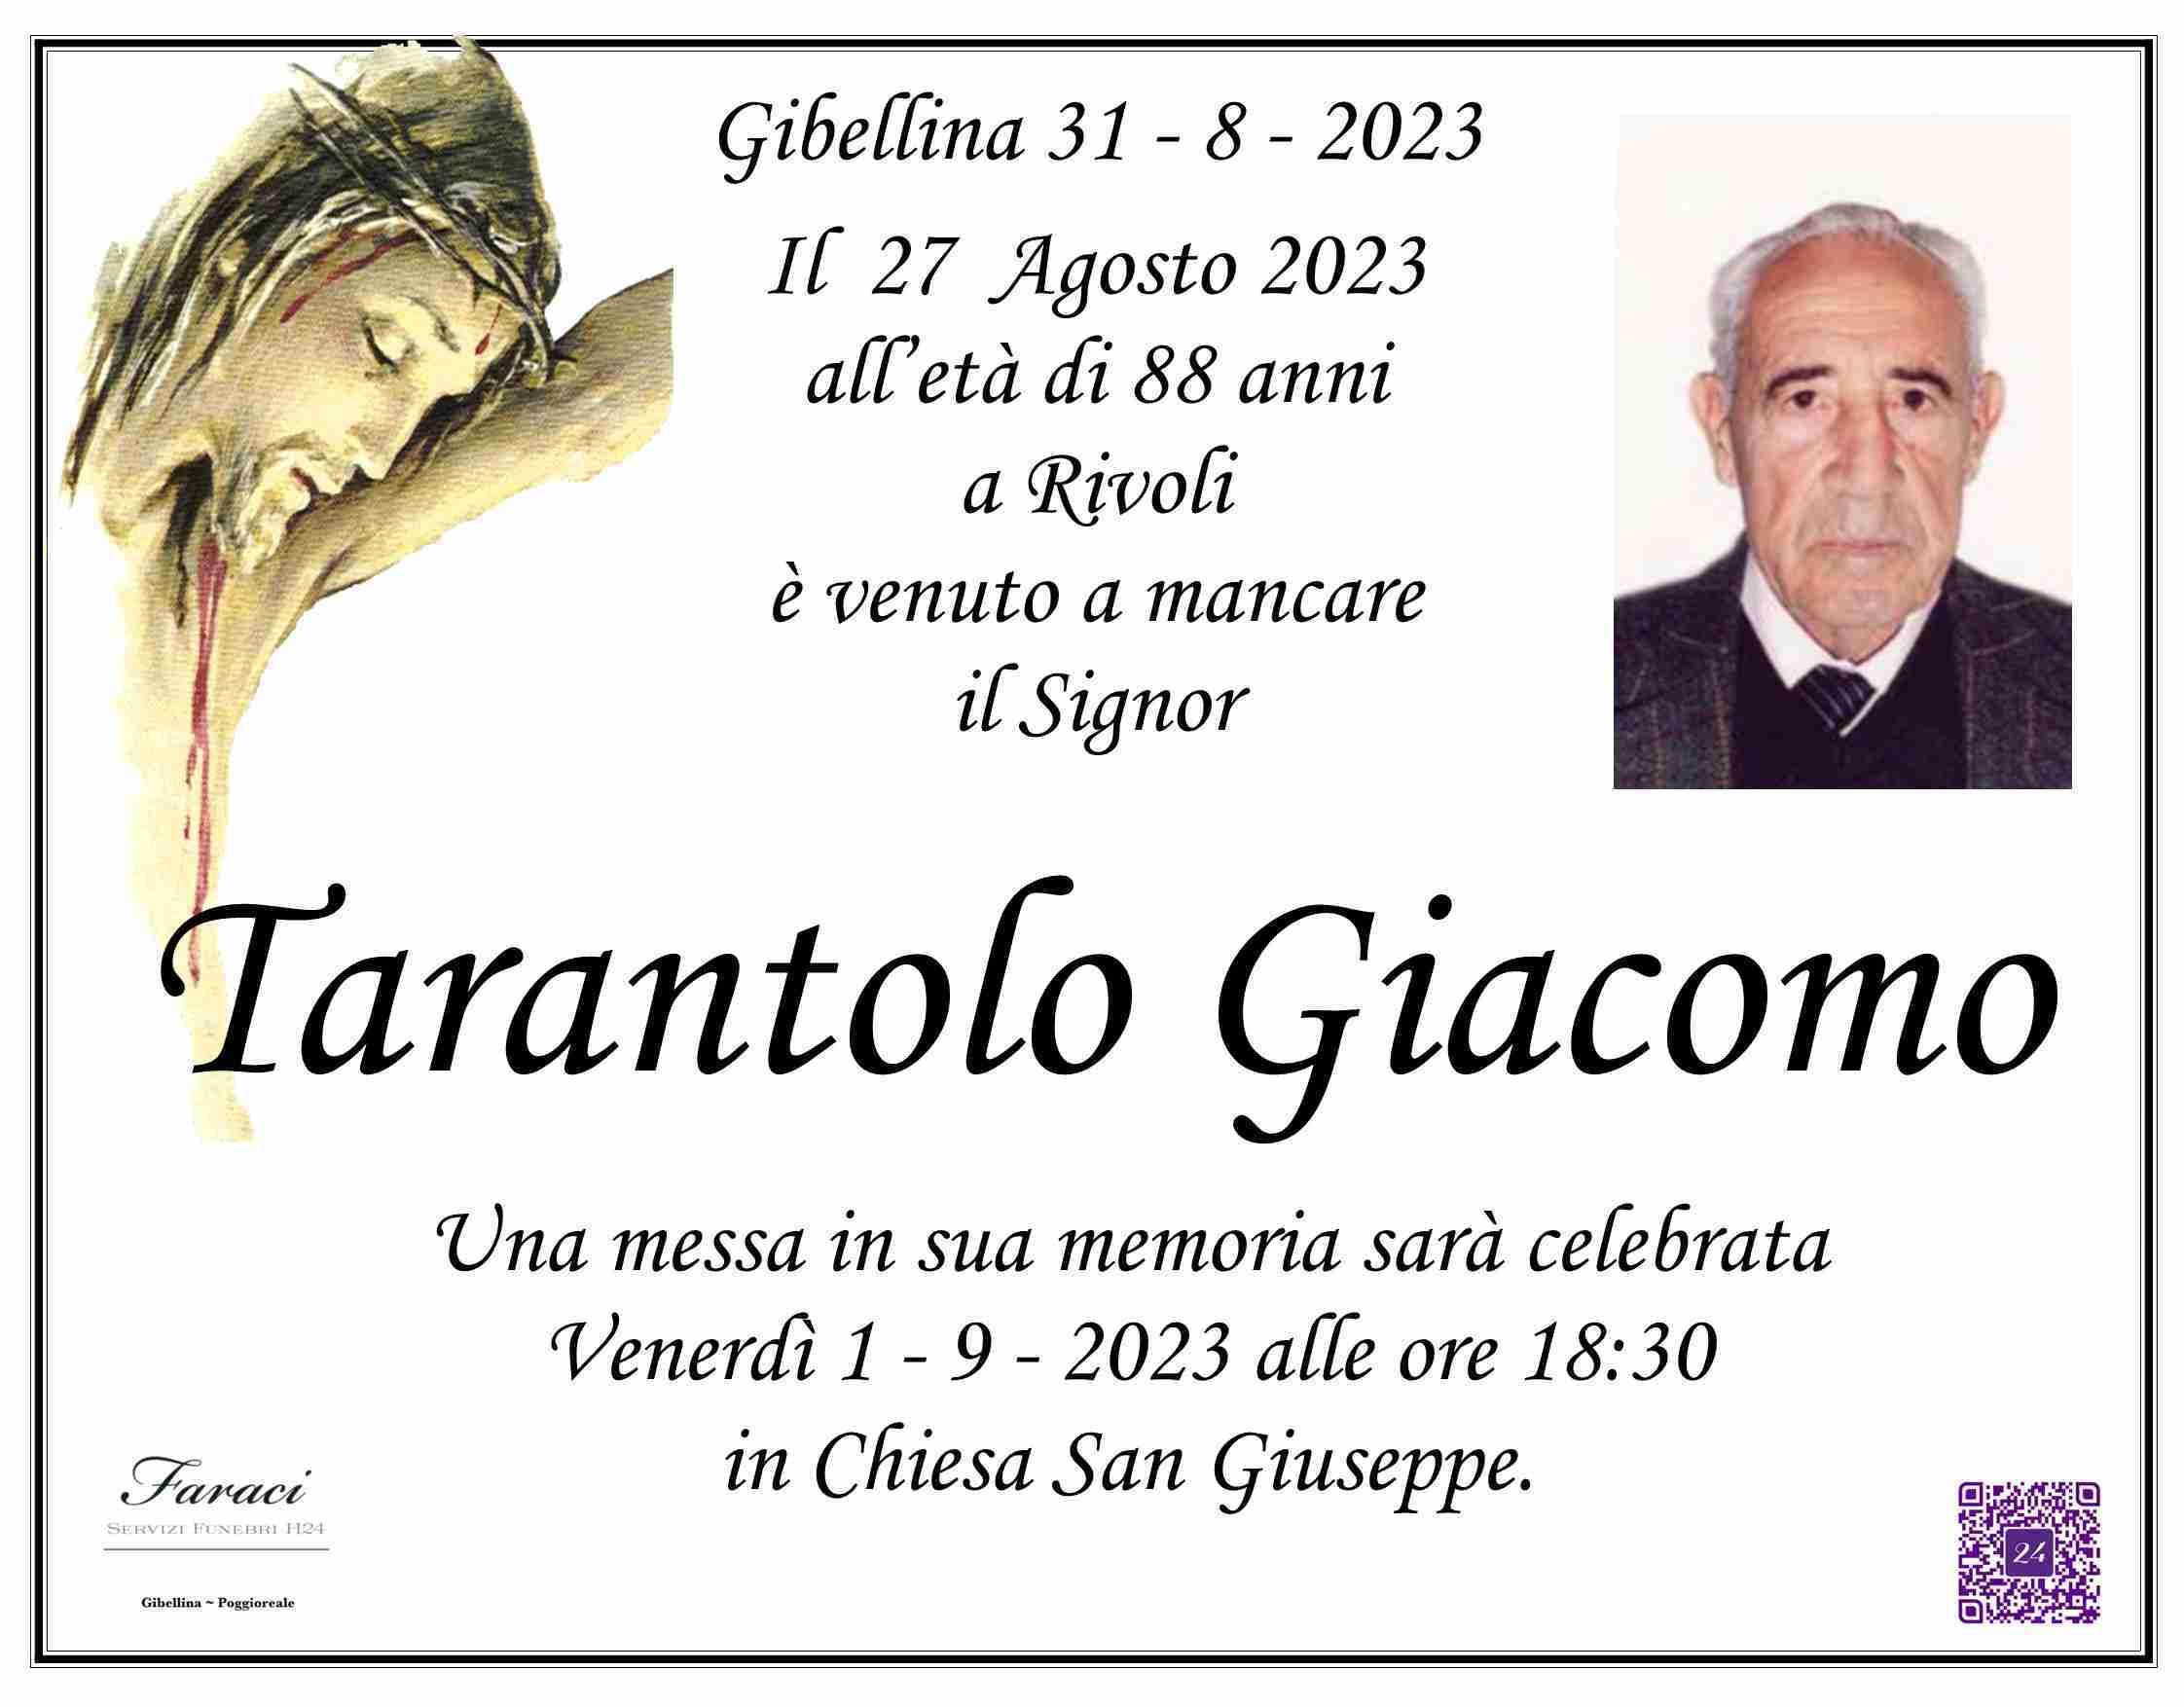 Giacomo Tarantolo